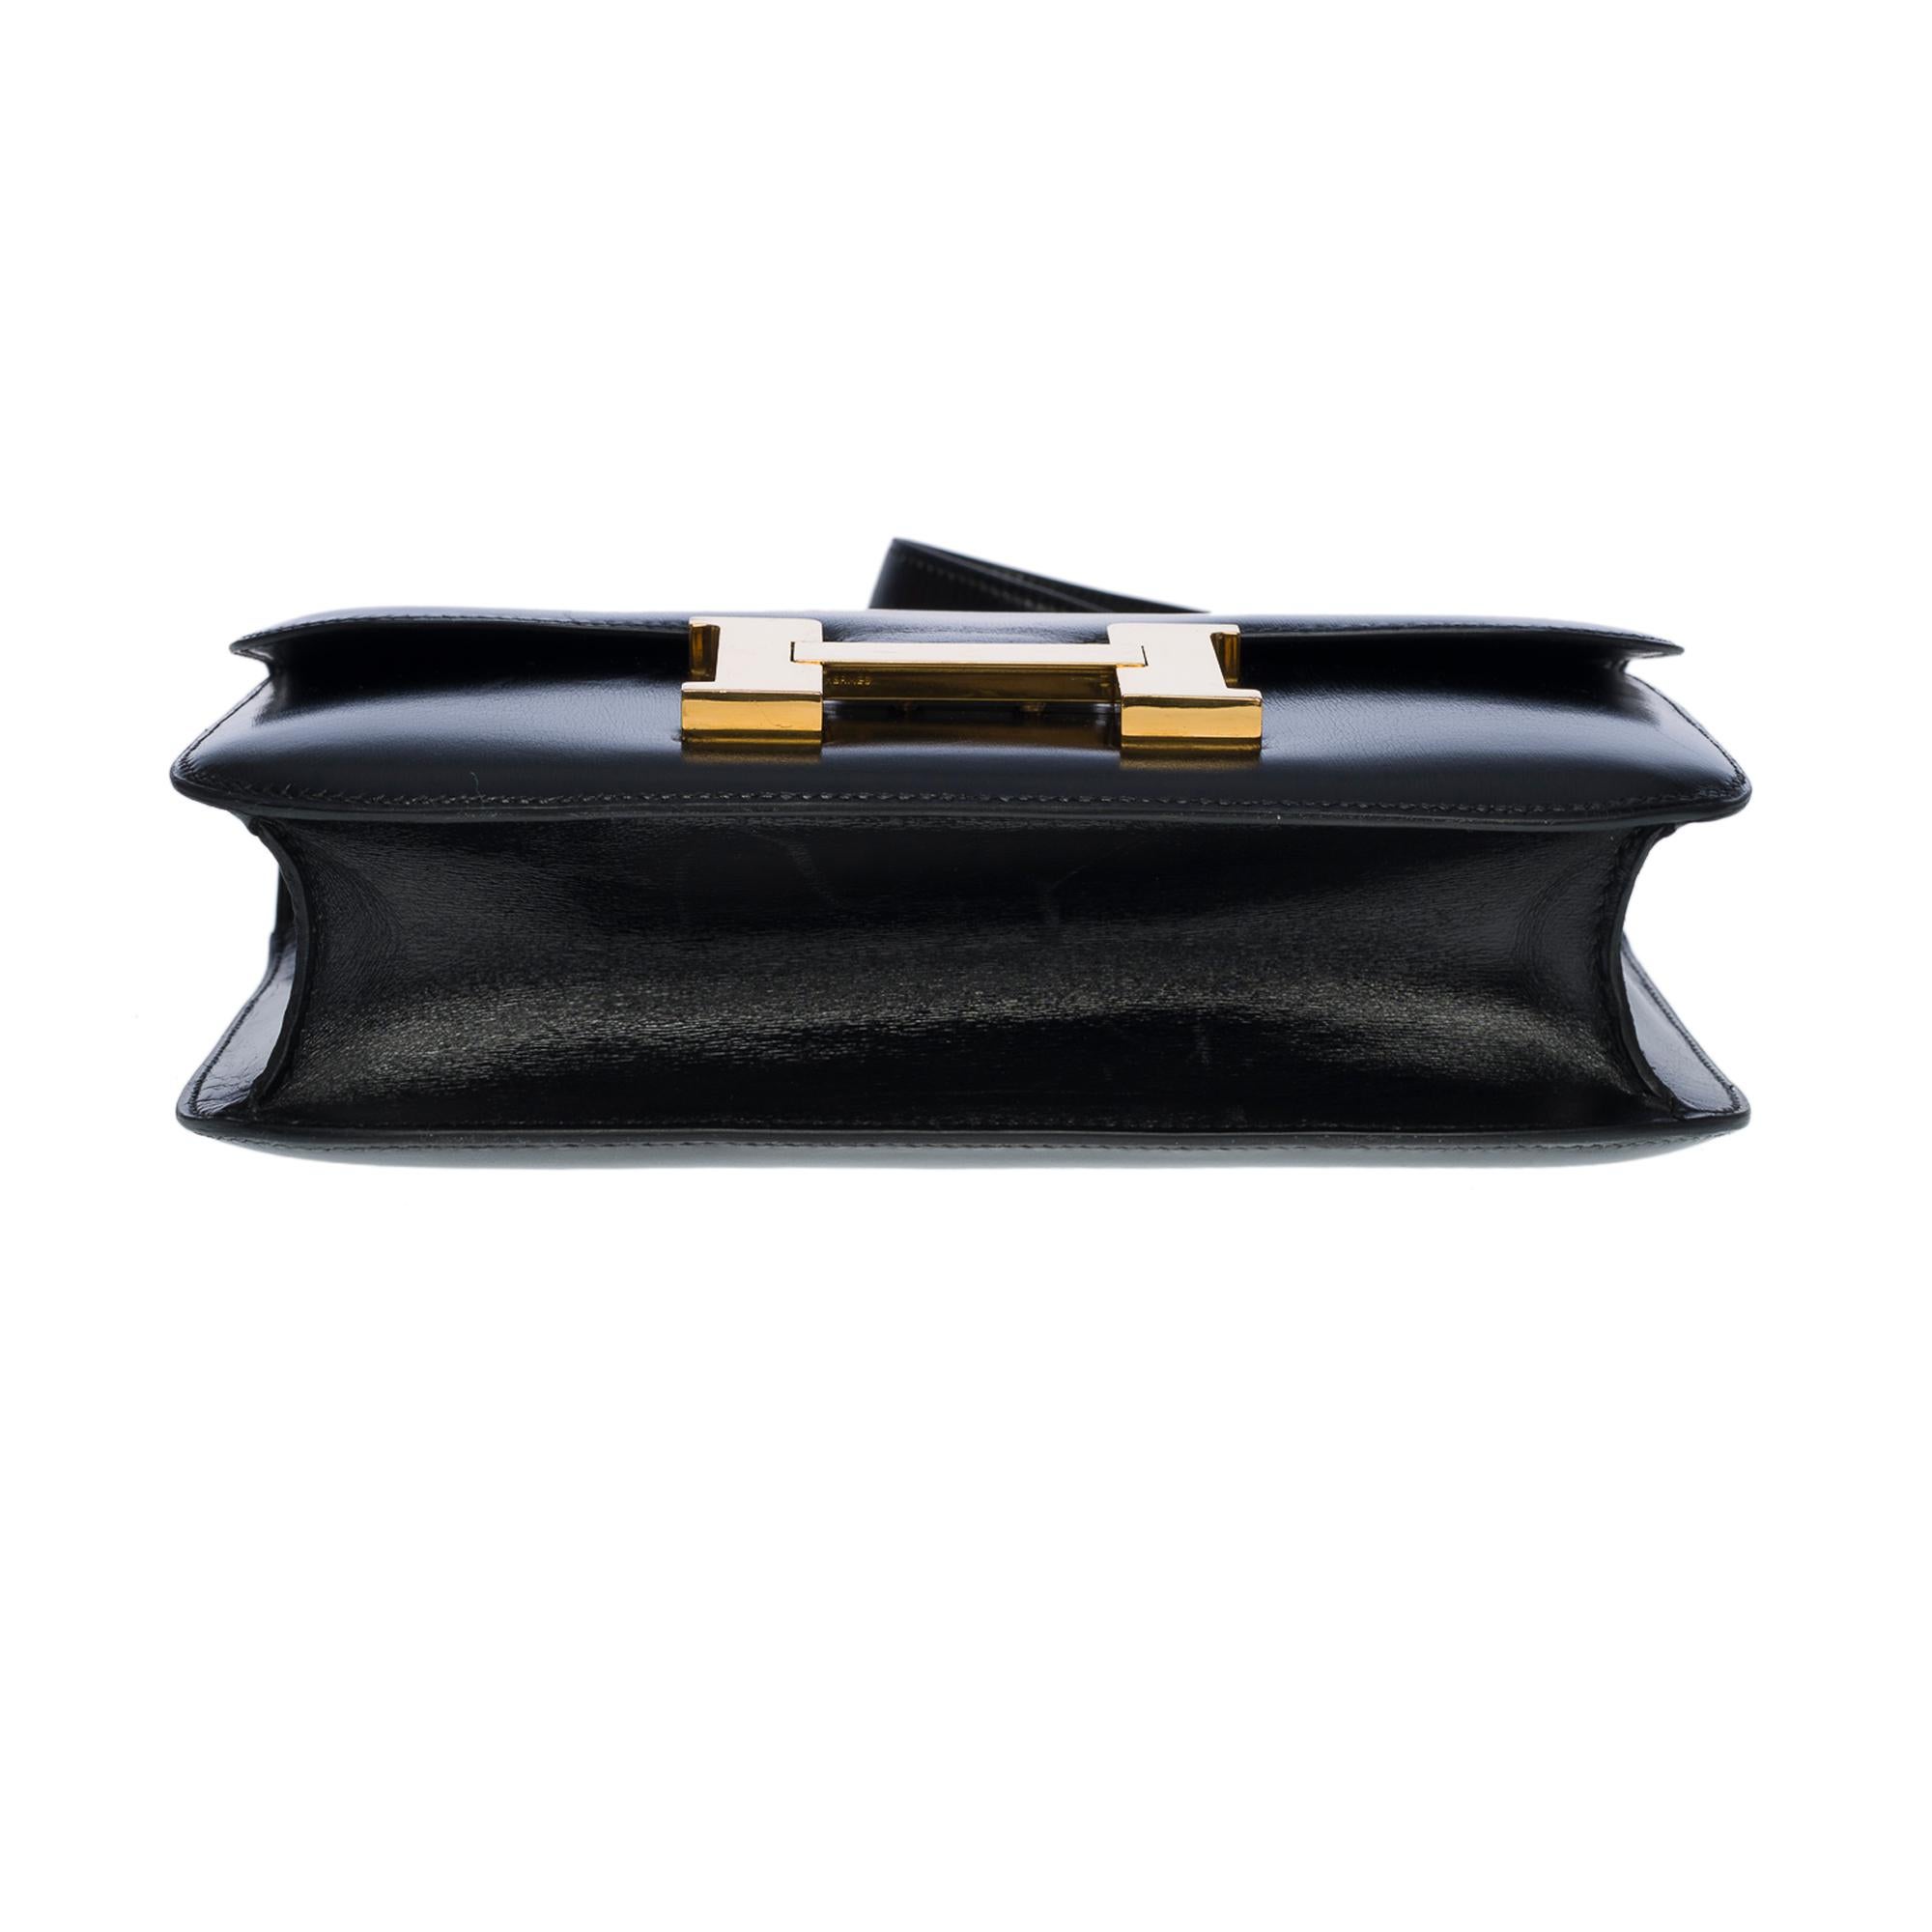 Stunning Hermes Constance 23 shoulder bag in black calfskin box leather, GHW 4